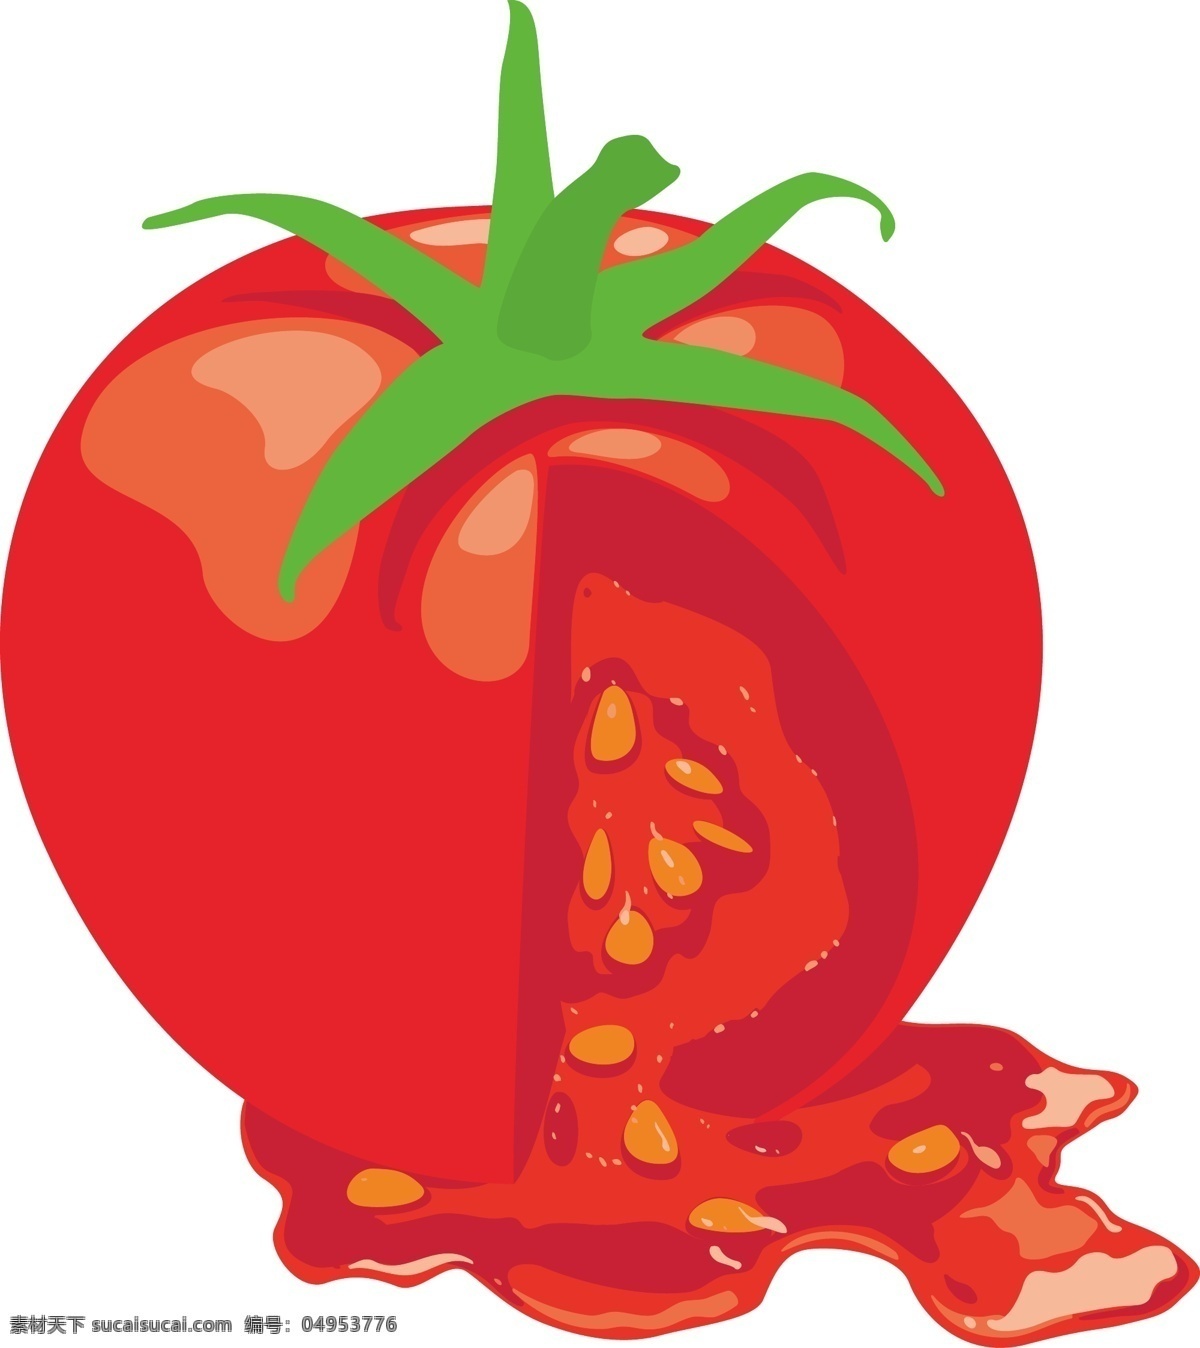 餐饮美食 番茄 生活百科 矢量图 模板下载 矢量 水果 日常生活